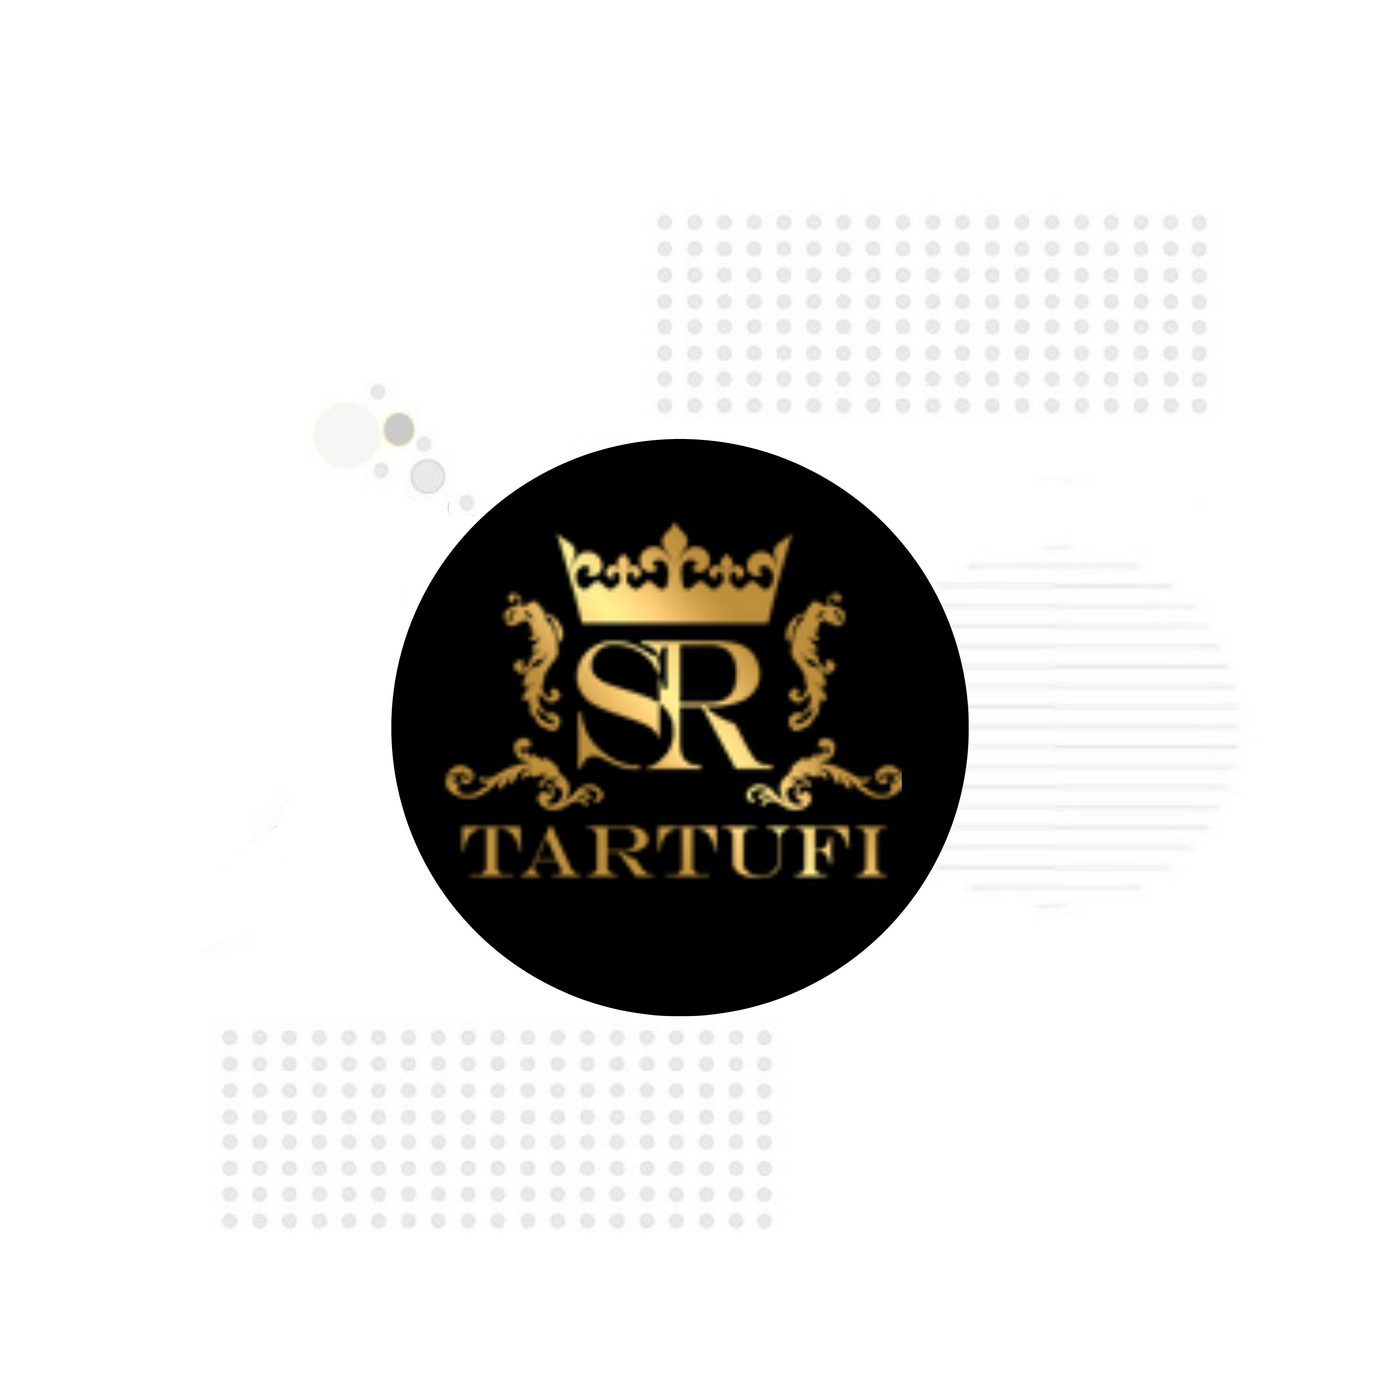 Tartufi SR